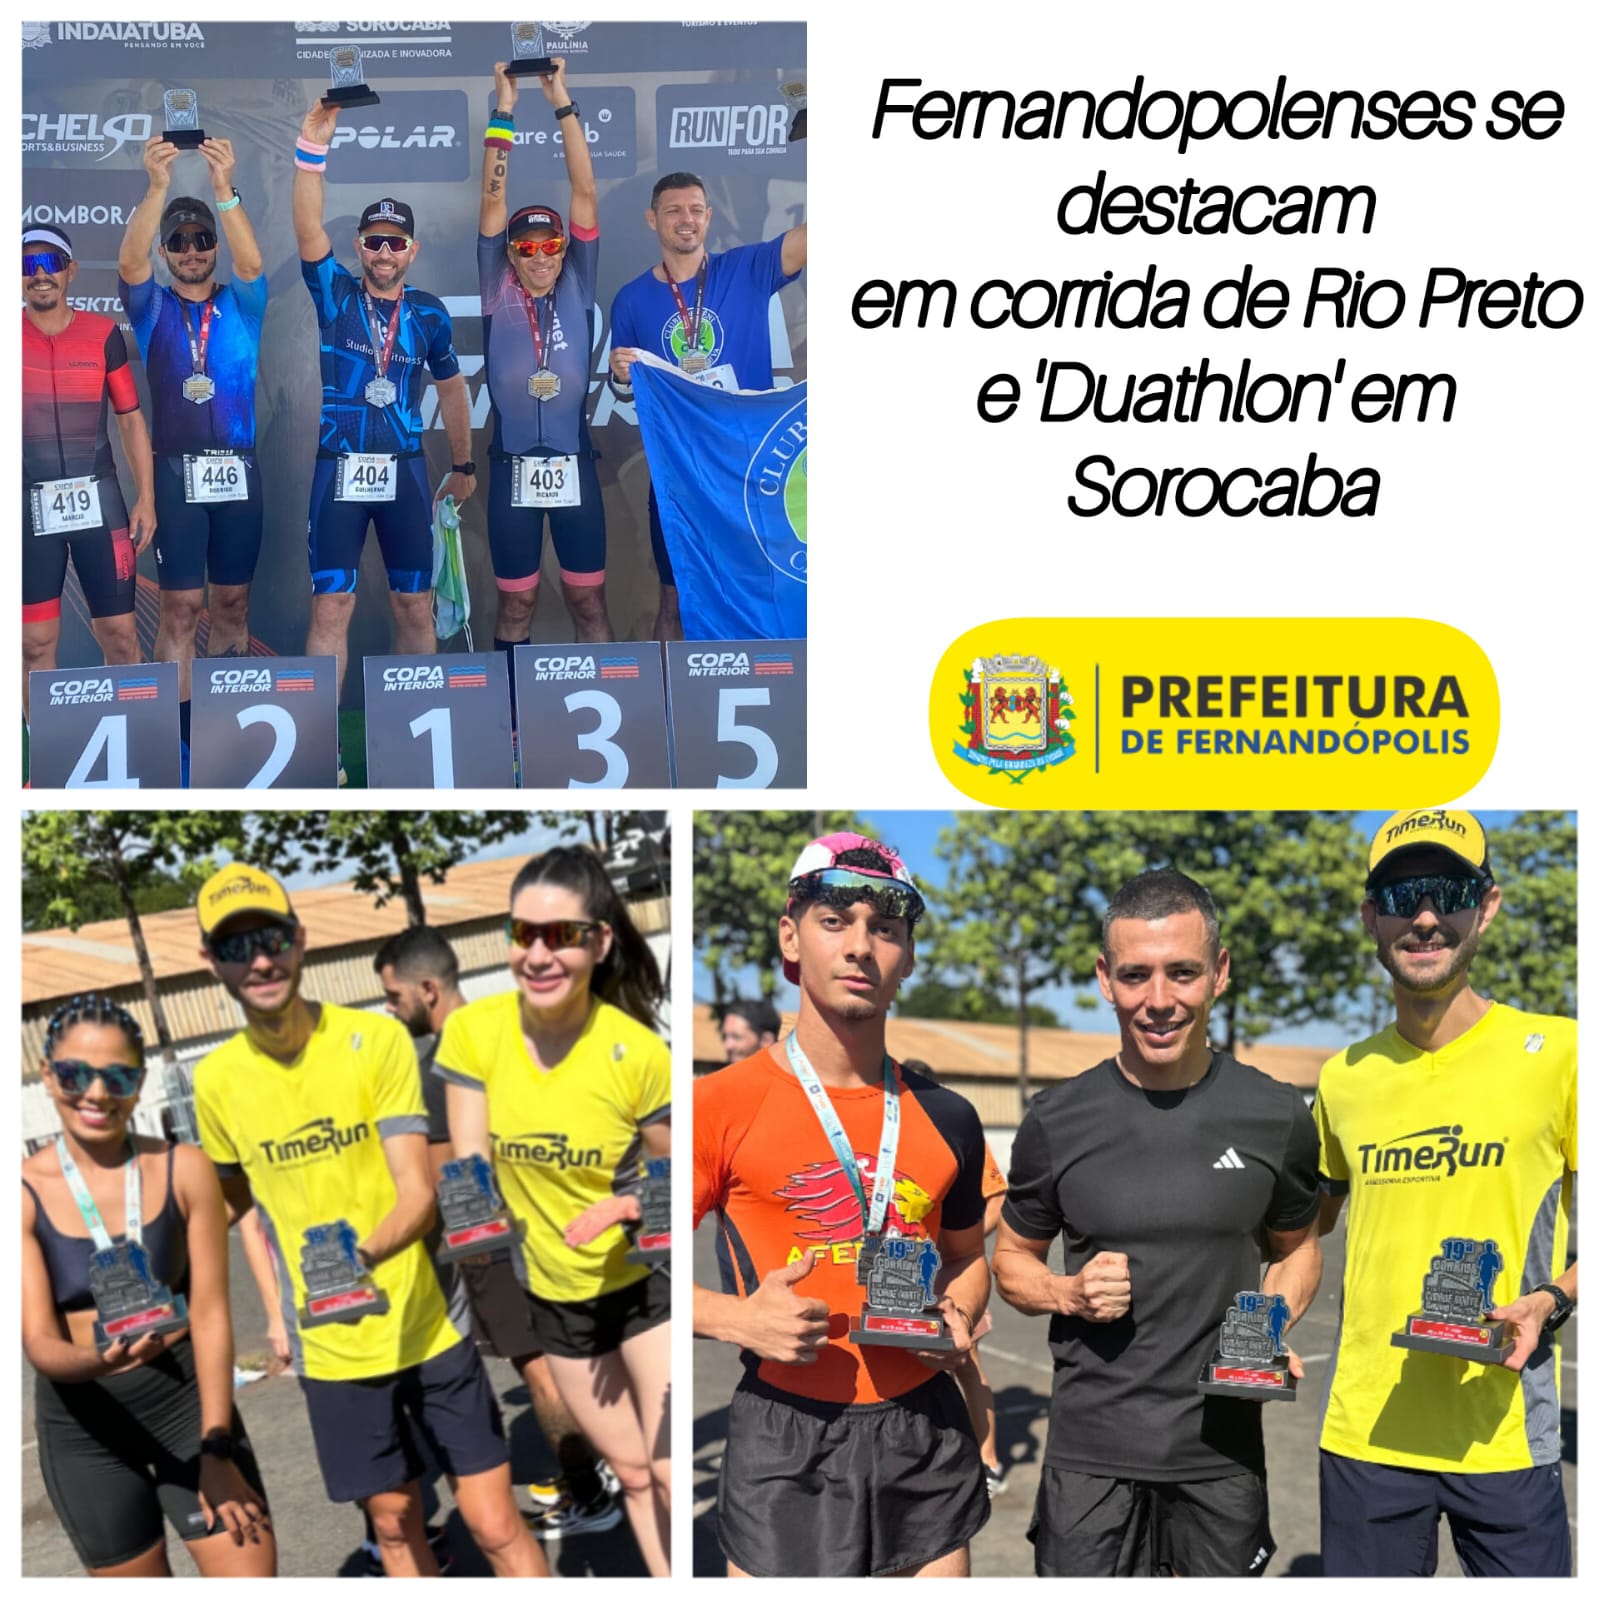 Fernandopolenses se destacam em corrida de Rio Preto e ‘Duathlon’ em Sorocaba